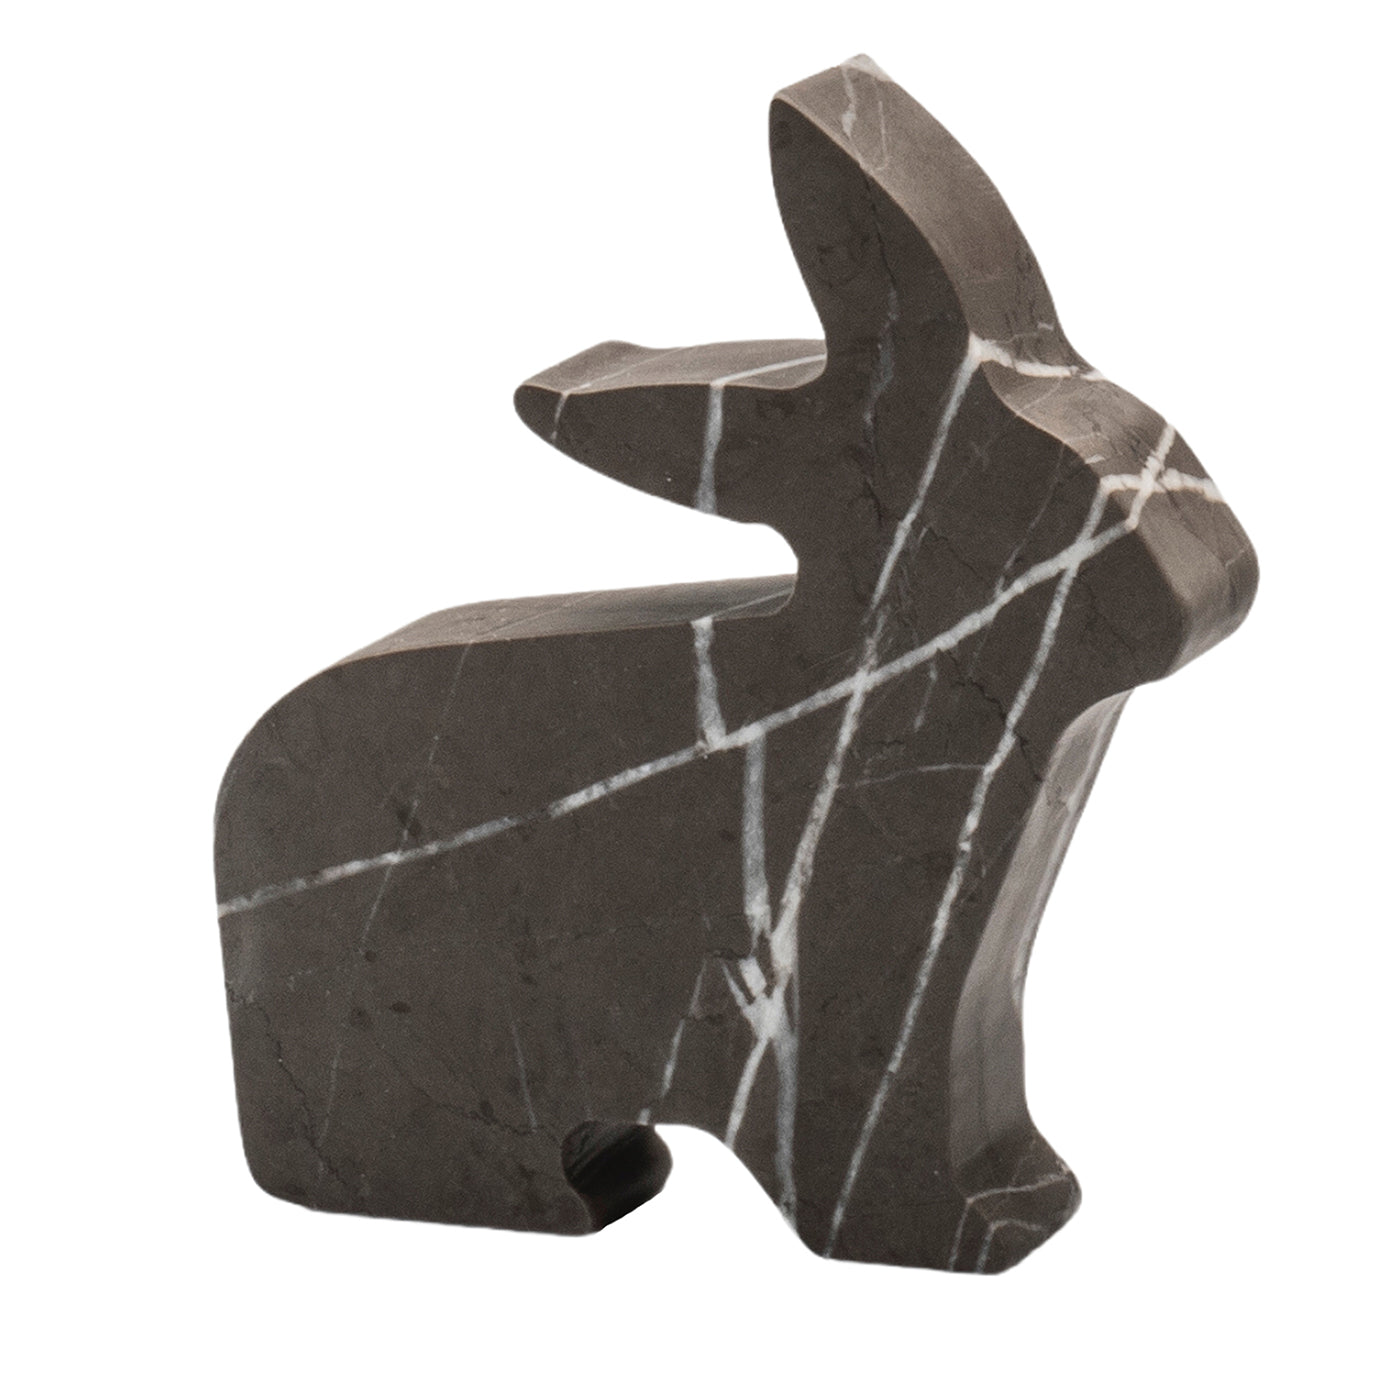 Coniglio Kleine graue Statuette von Alessandra Grasso - Hauptansicht